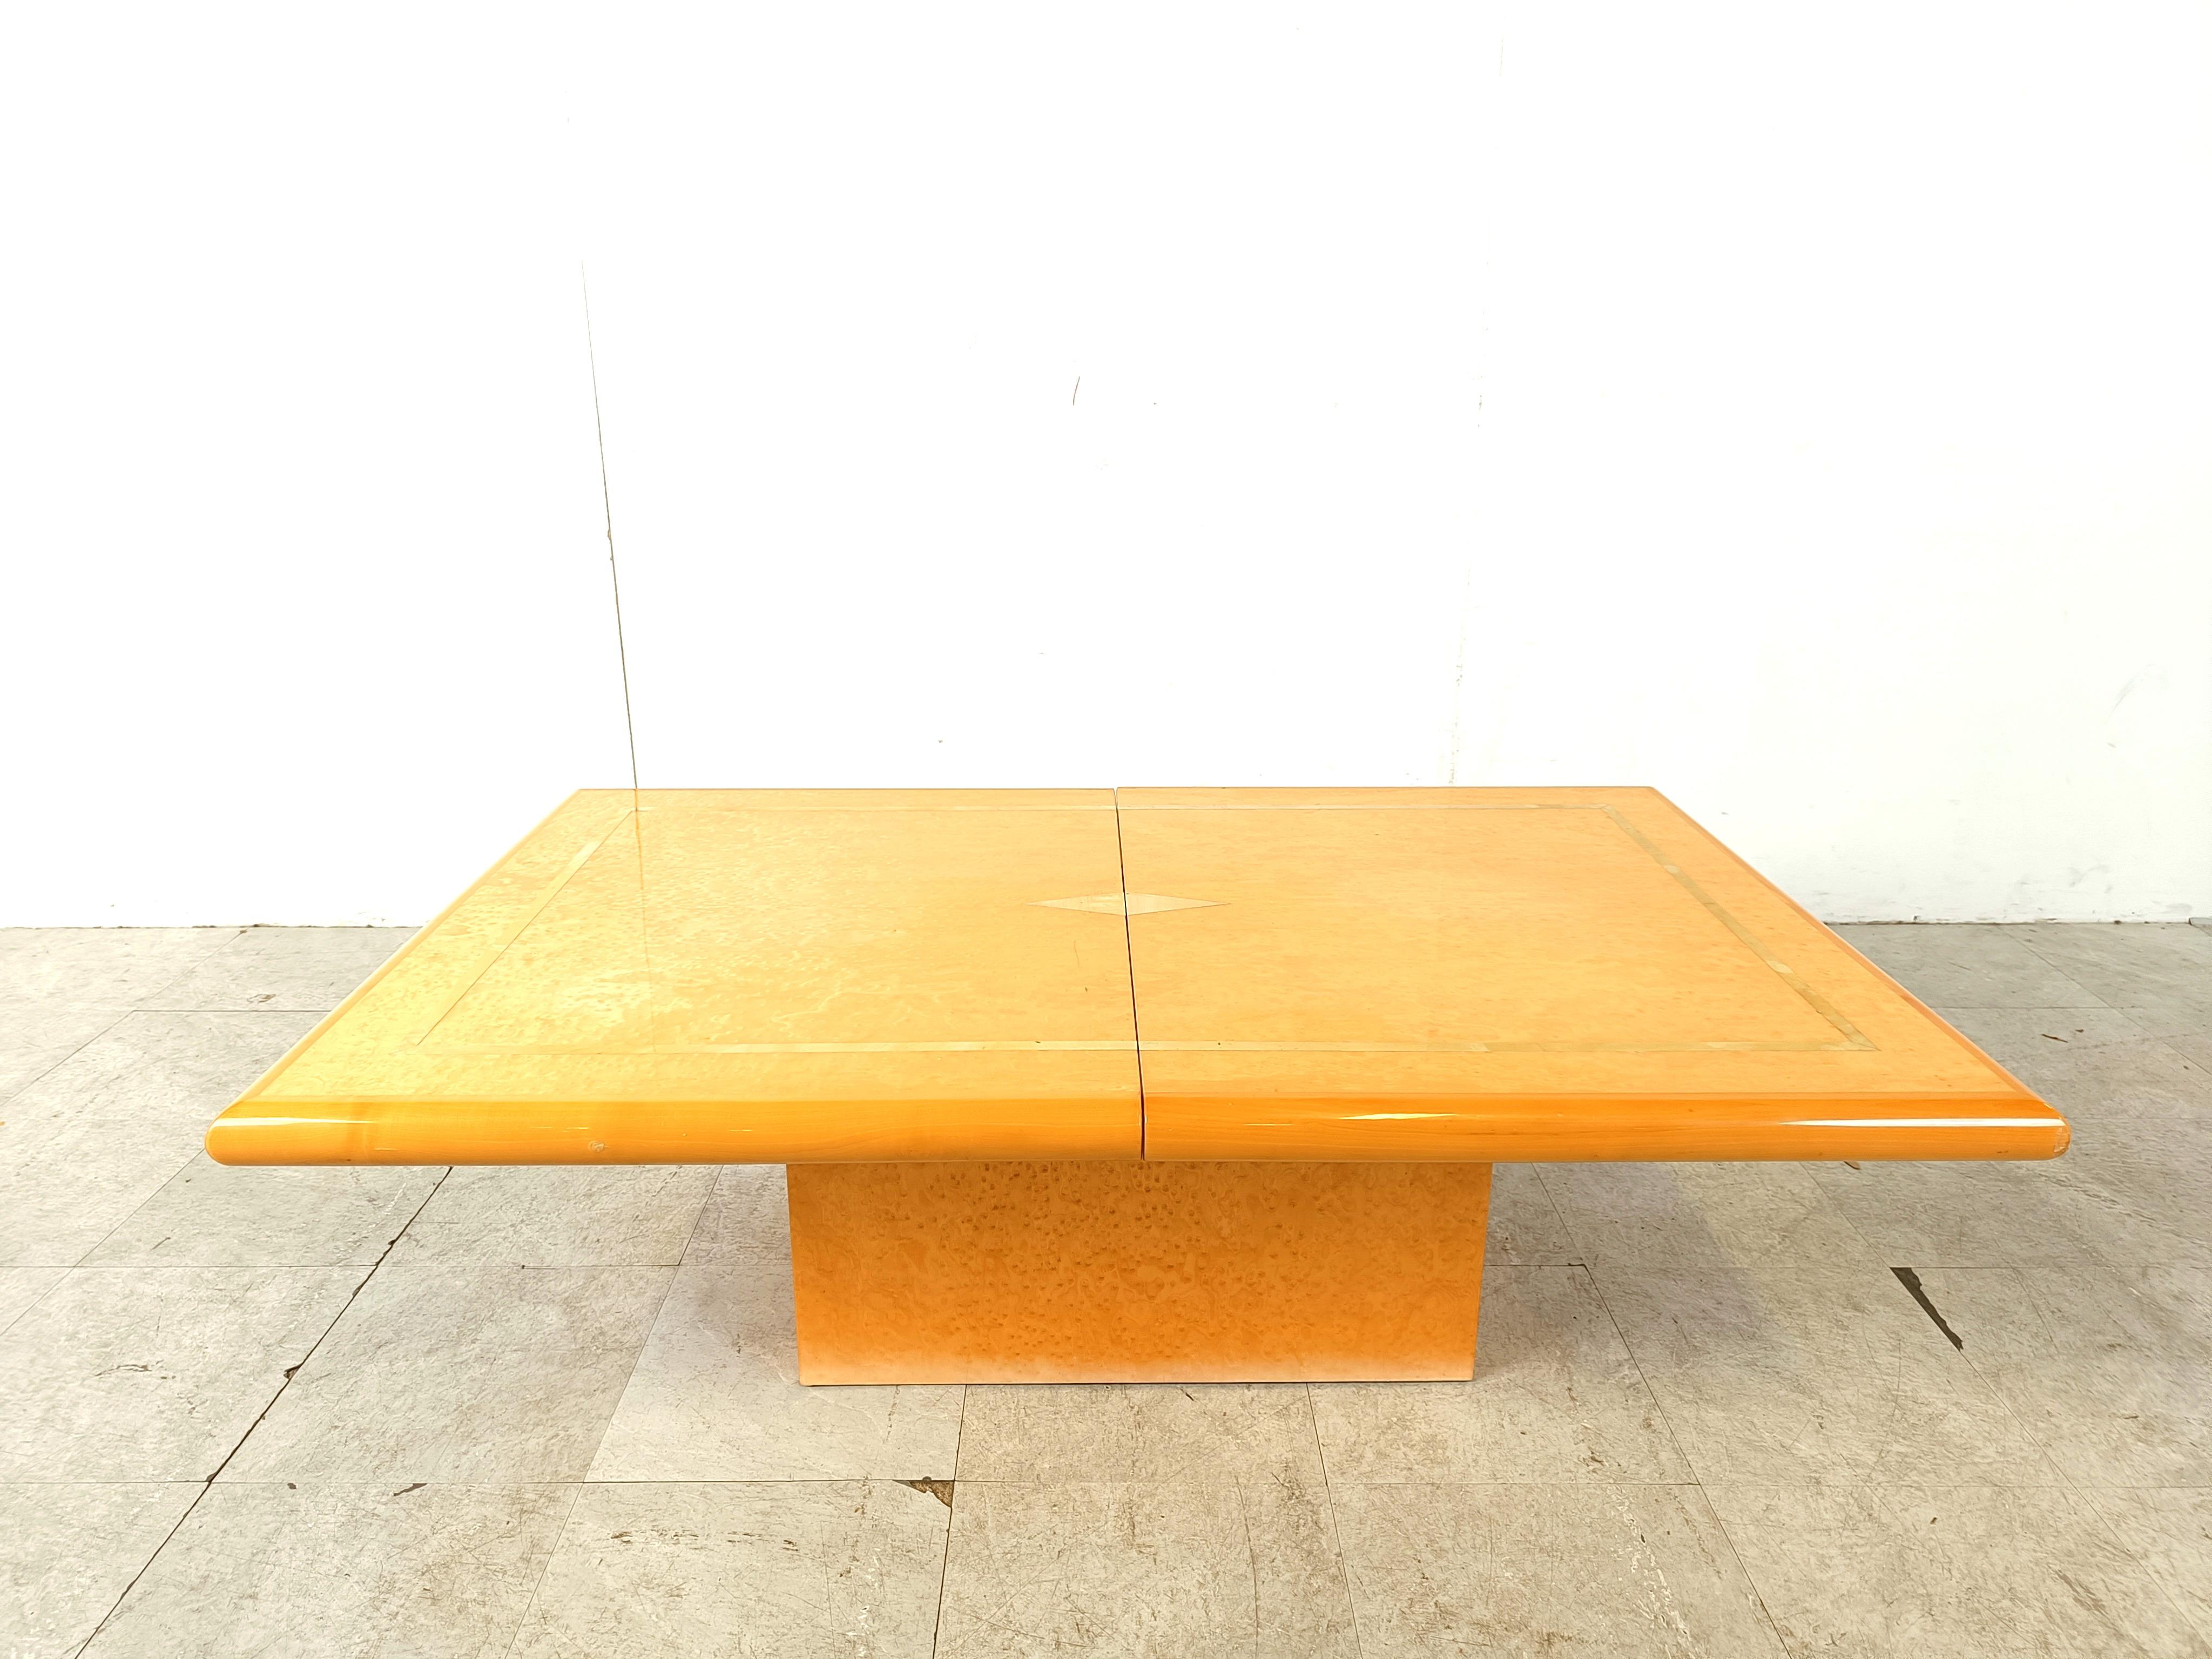 Exquise table basse en bois d'Eric Maville.

Cette luxueuse table basse s'ouvre en coulissant pour révéler un espace de rangement en miroir pour les bouteilles et les verres. 

Joli plateau en bois de placage, avec des gouttières en laiton